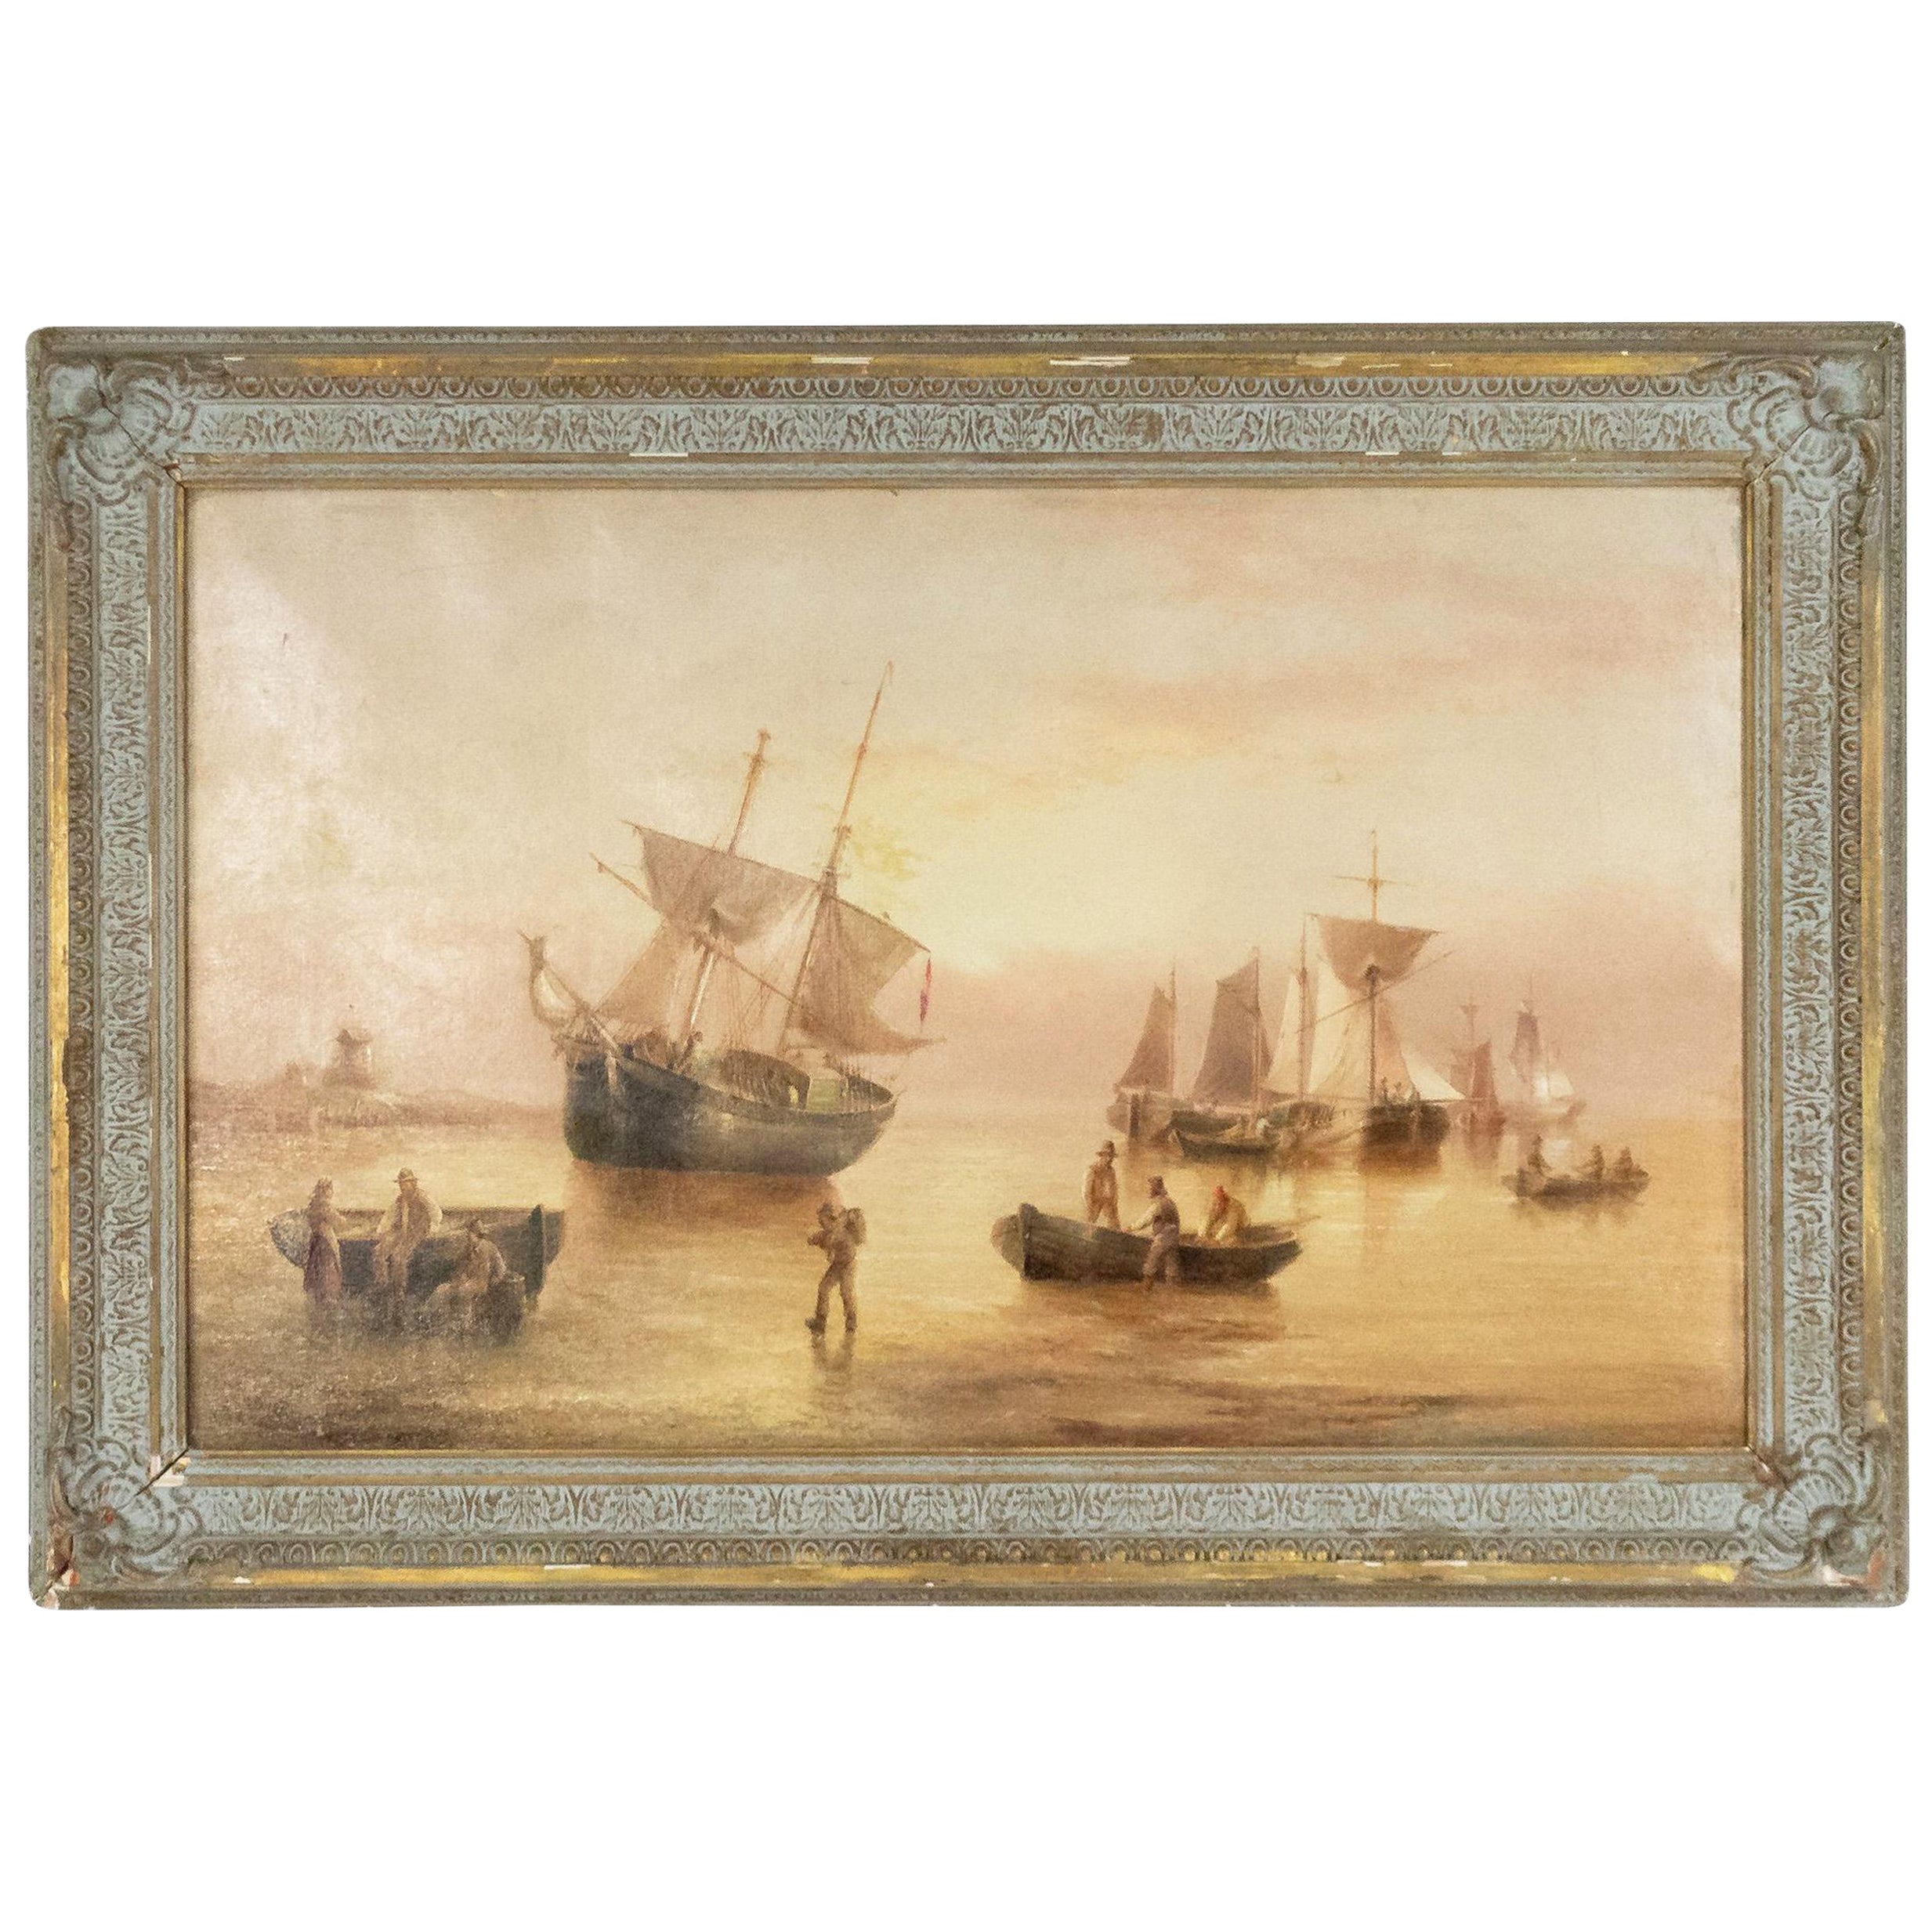 Peinture anglaise victorienne du 19ème siècle représentant des bateaux de pêche dans un cadre doré